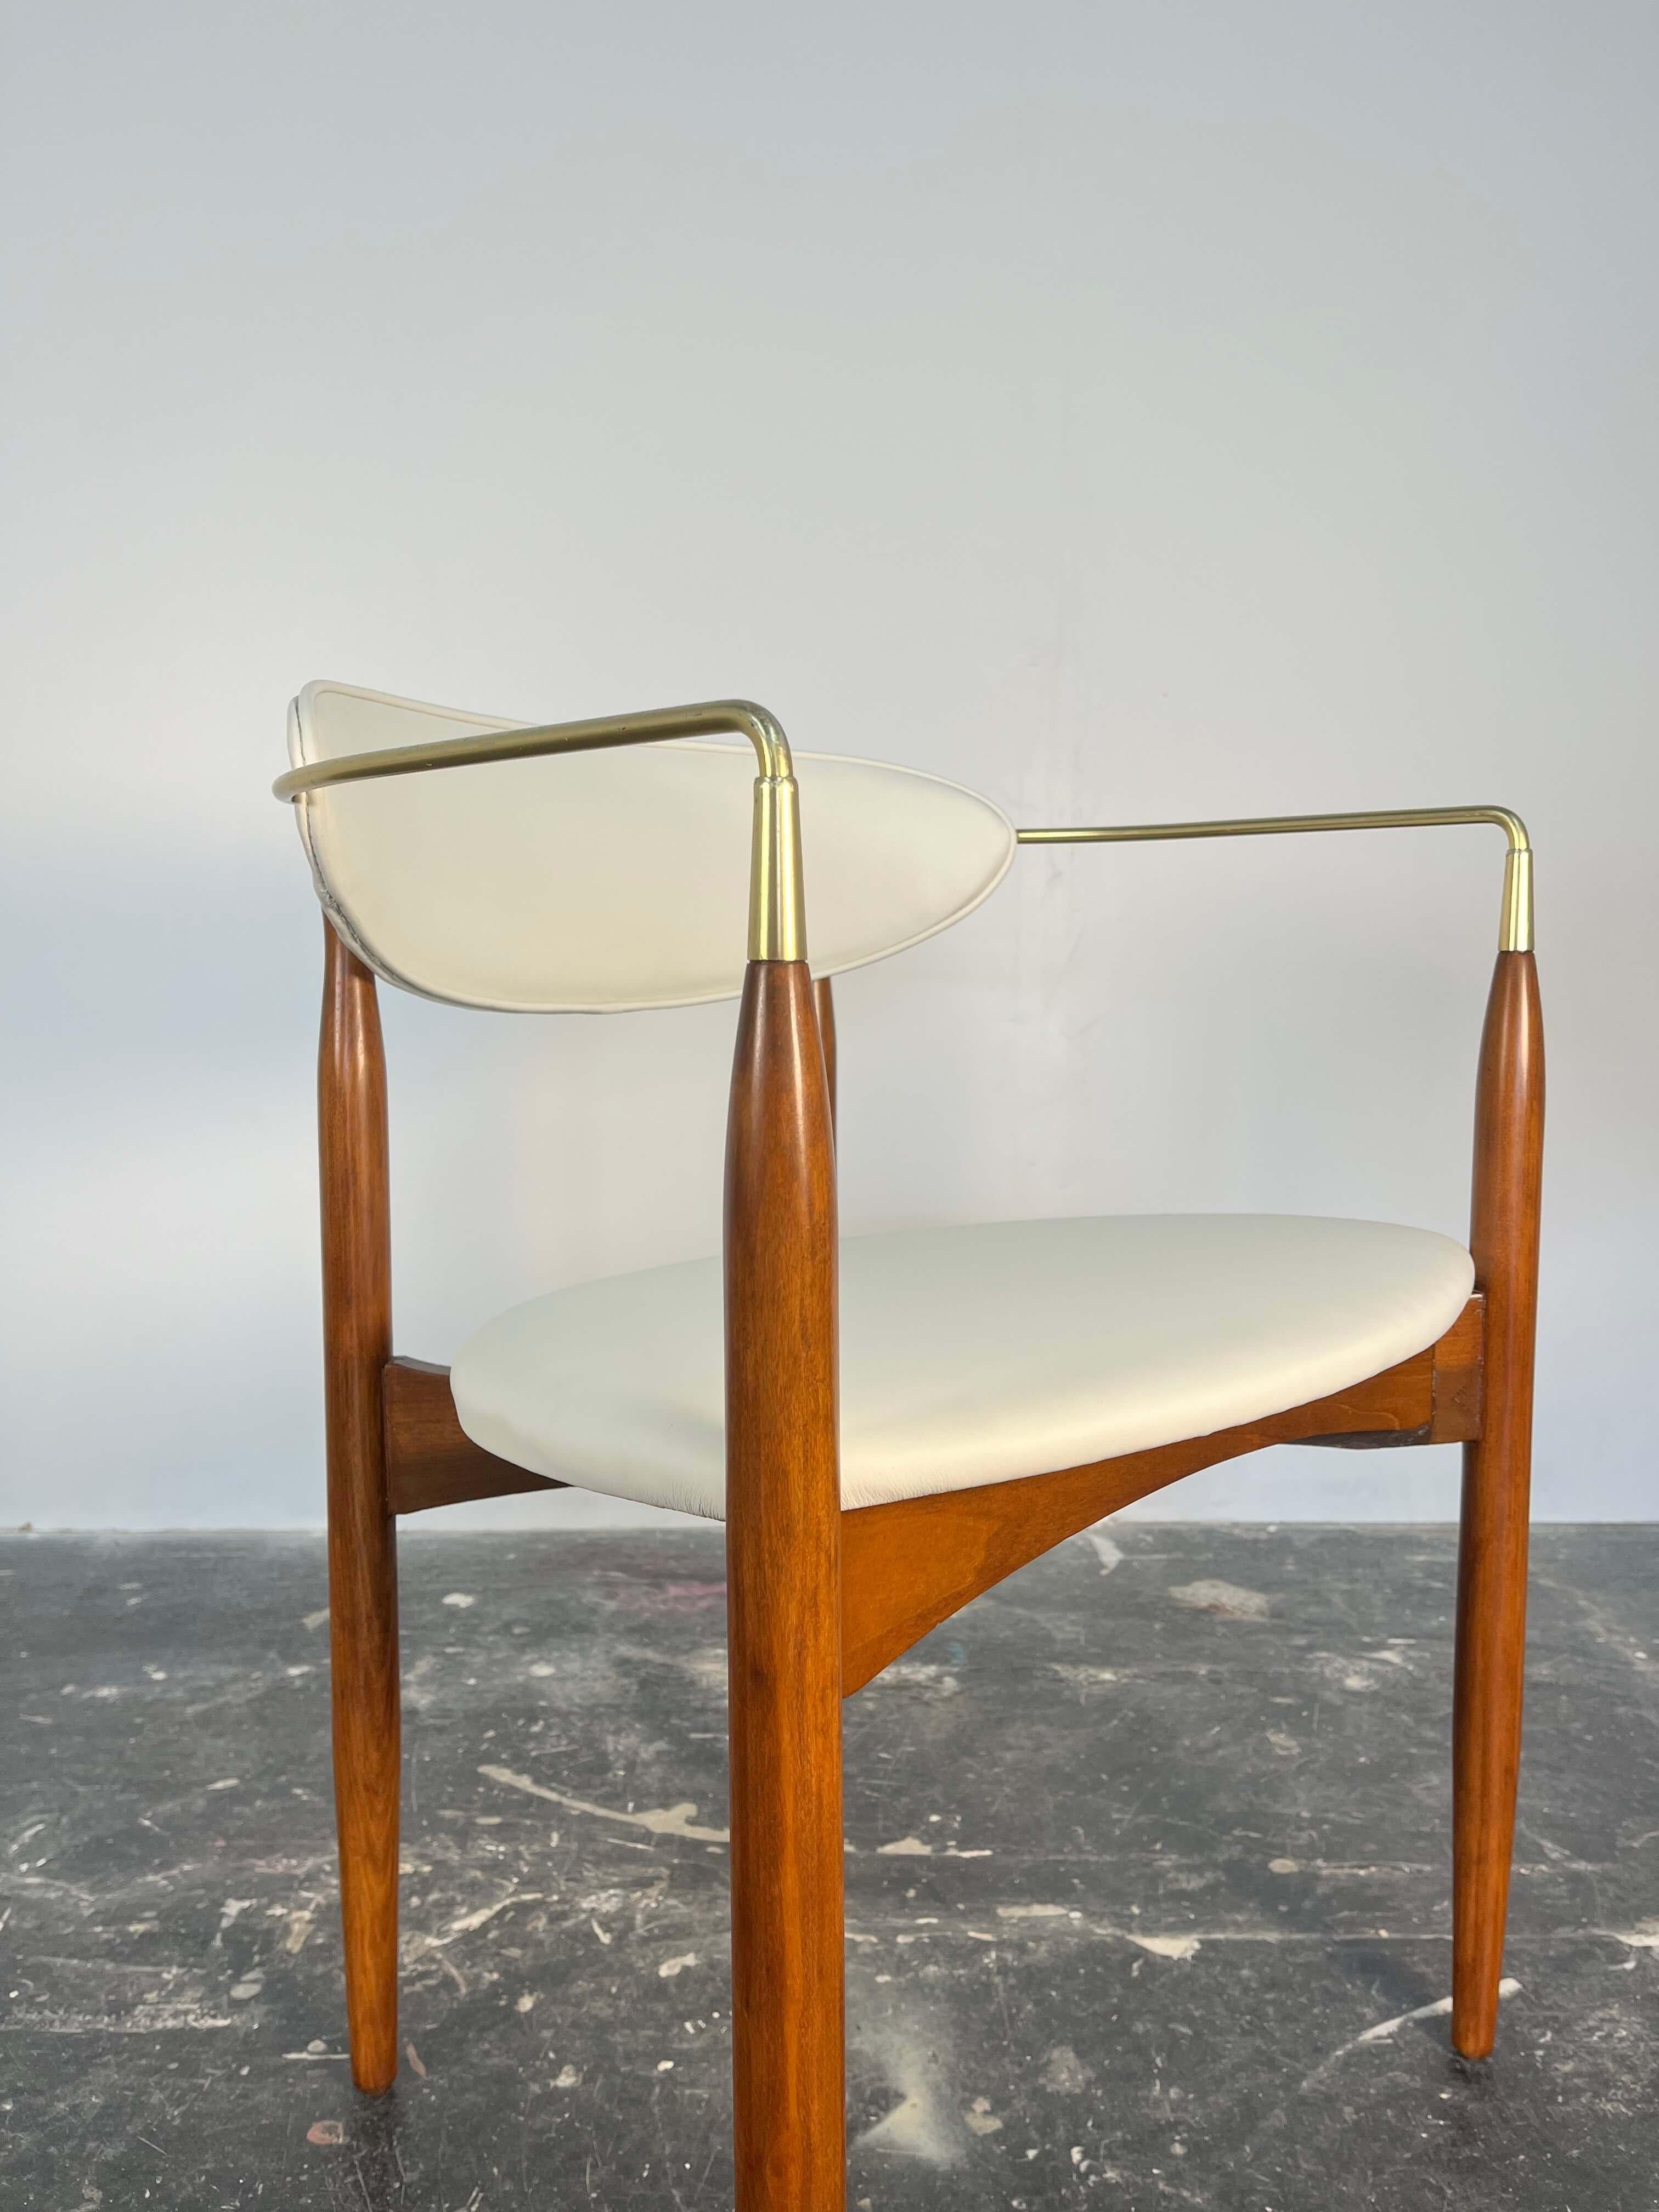 Il s'agit d'un magnifique ensemble de 4 chaises de salle à manger qui ont été conçues par Dan Johnson pour Selig. De forme dramatique et curviligne, ces chaises sont dotées d'accoudoirs en laiton massif. Les élégants pieds fuselés sont finement